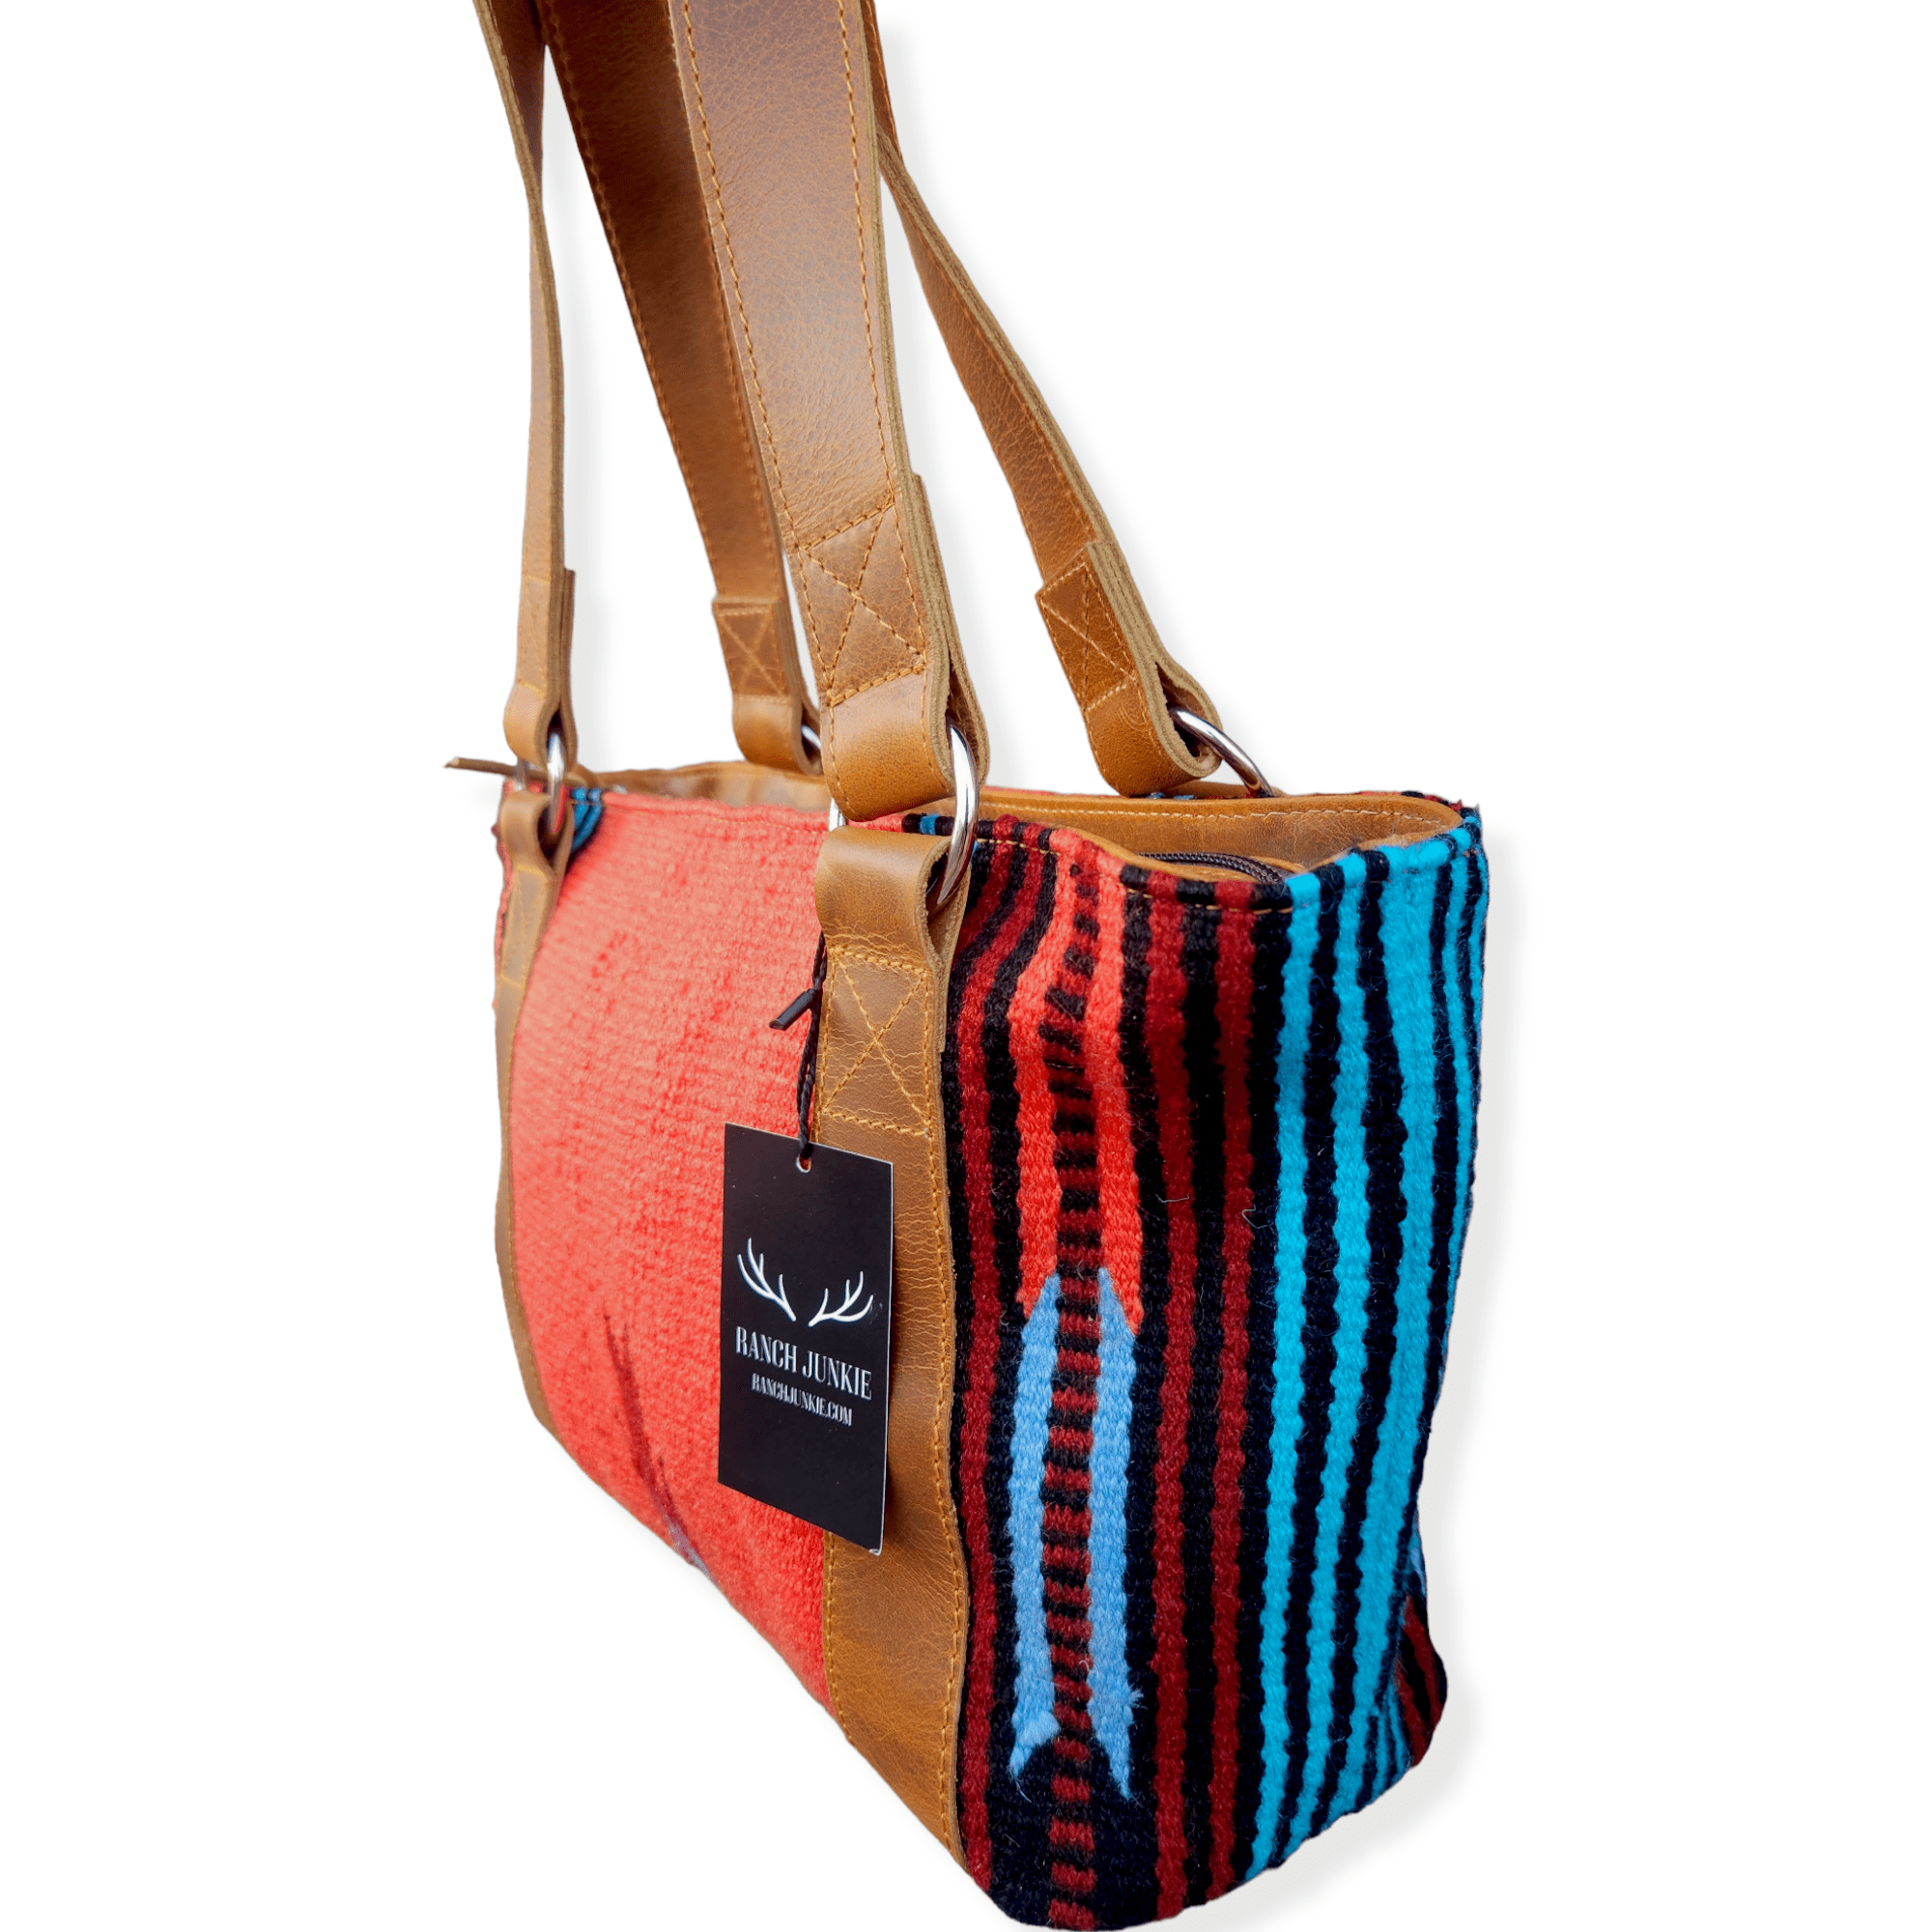 Bundle Deal- Sedona Wool Southwestern Boho Aztec Large Weekender Duffel Bag +Sedona Handwoven Wool Tote Purse Luggage & BagsRanch Junkie